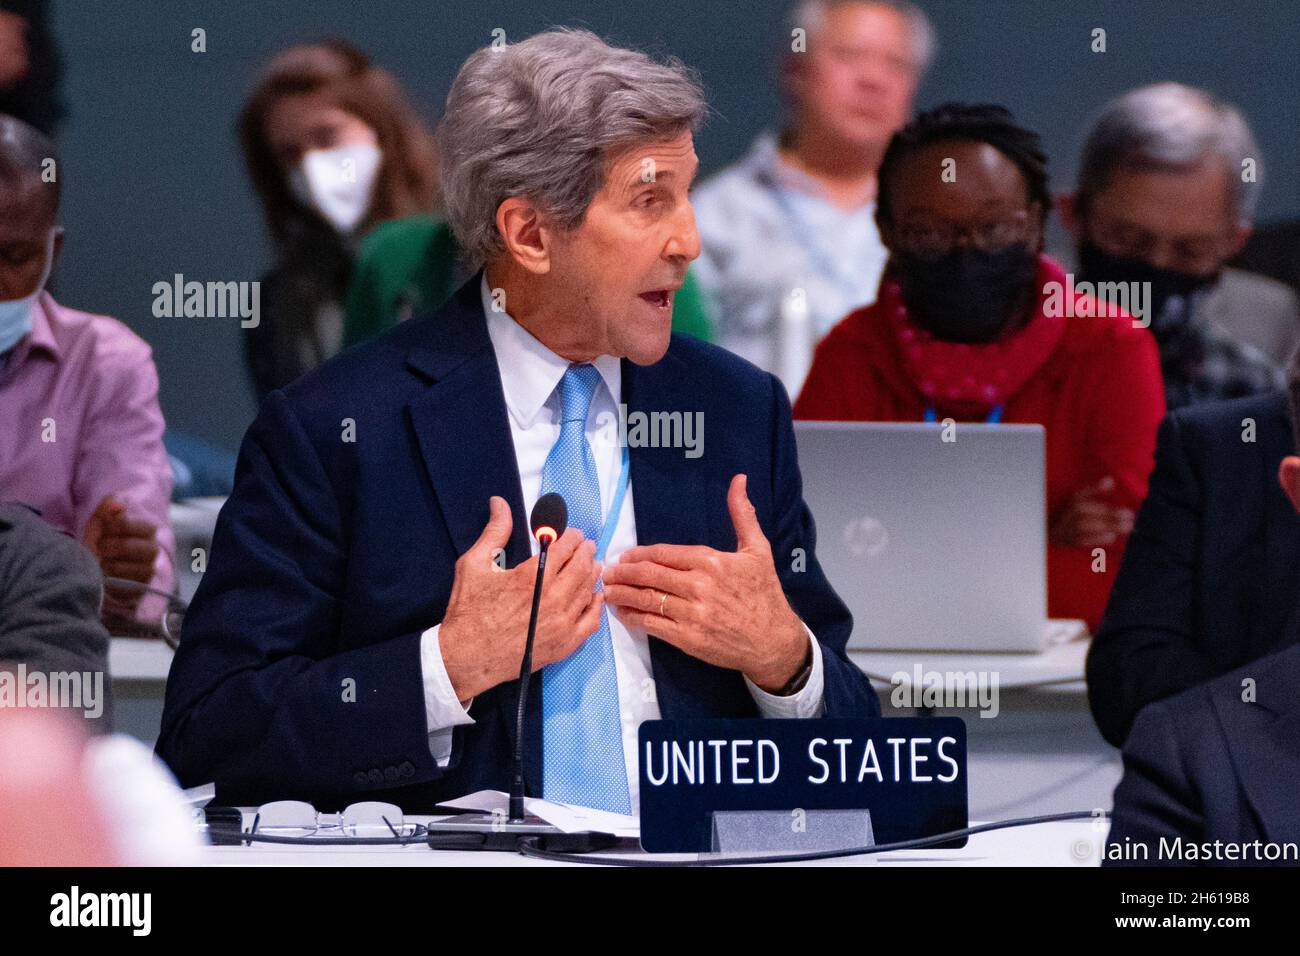 Glasgow, Schottland, Großbritannien. November 2021. Tag dreizehn und letzter Tag des UN-Klimagipfels COP26 in Glasgow. Der Präsident der COP26, Alok Sharma, hält eine Plenarsitzung ab, um den Fortschritt der Verhandlungen über den Klimawandel zu diskutieren. PIC; der US-Delegierte John Kerry spricht vor der Plenarsitzung und gibt die Kommentare der USA zum Entwurf ab. Iain Masterton/Alamy Live News. Stockfoto